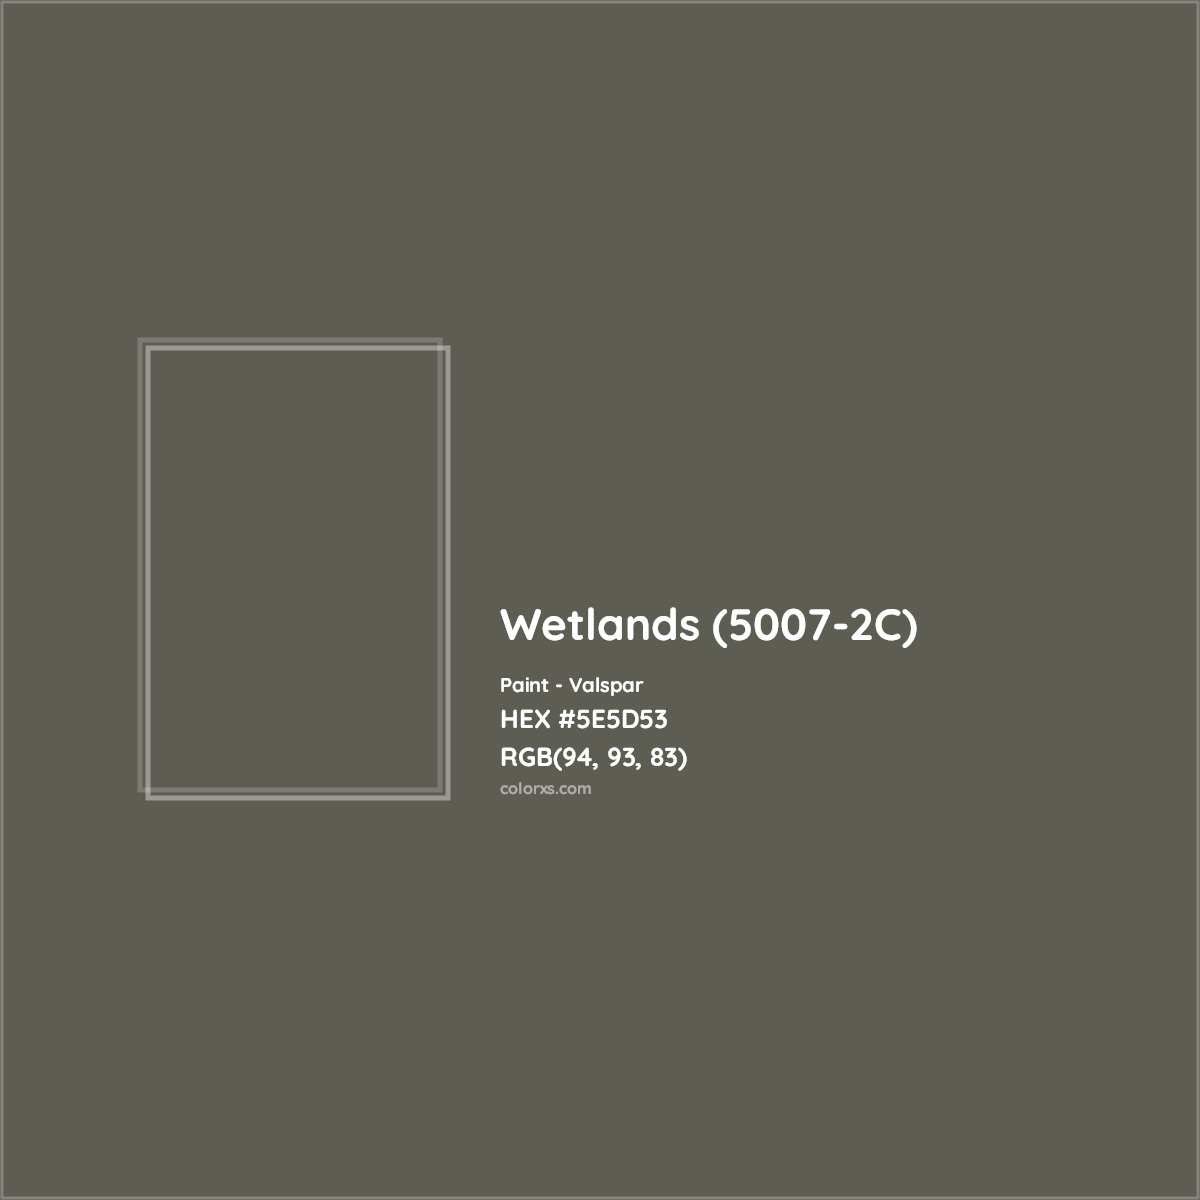 HEX #5E5D53 Wetlands (5007-2C) Paint Valspar - Color Code